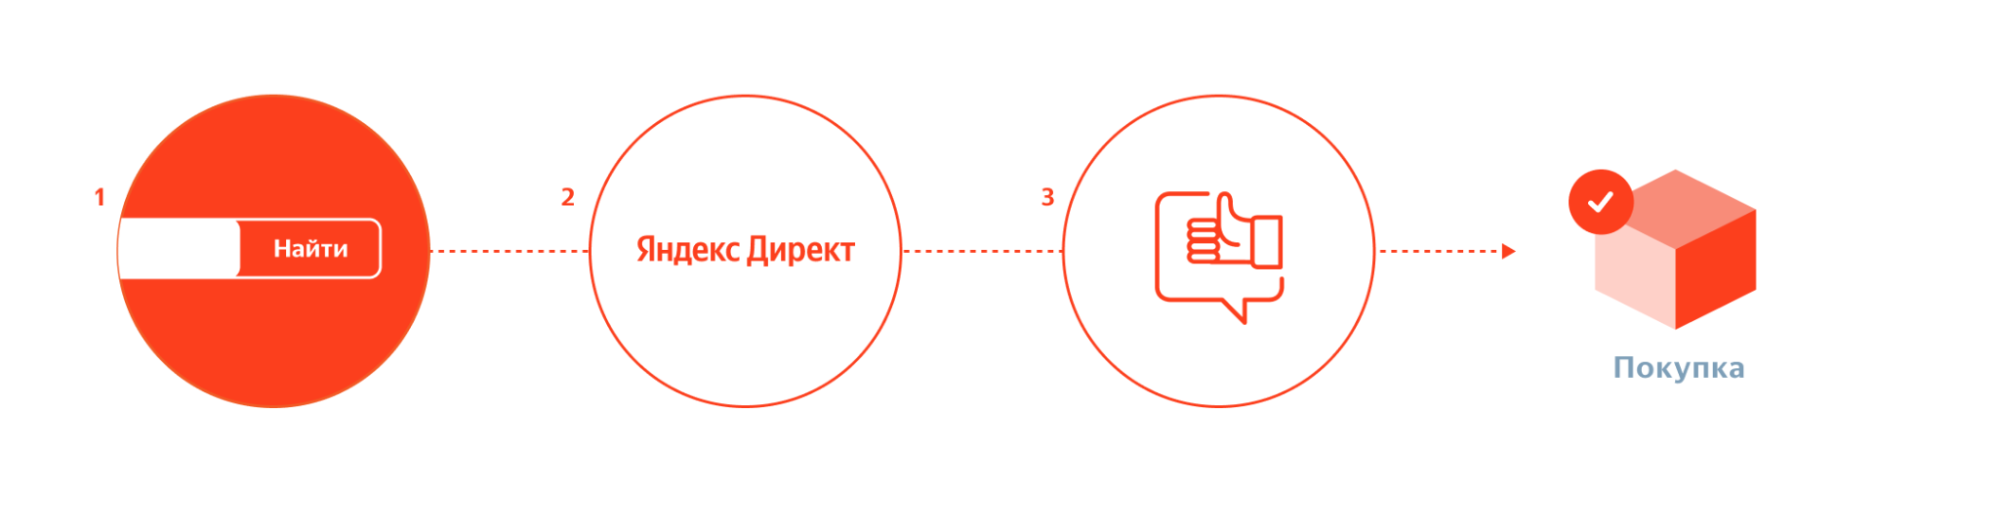 Яндекс.Метрика и Директ начали учитывать переходы со всех устройств пользователя на пути к конверсии